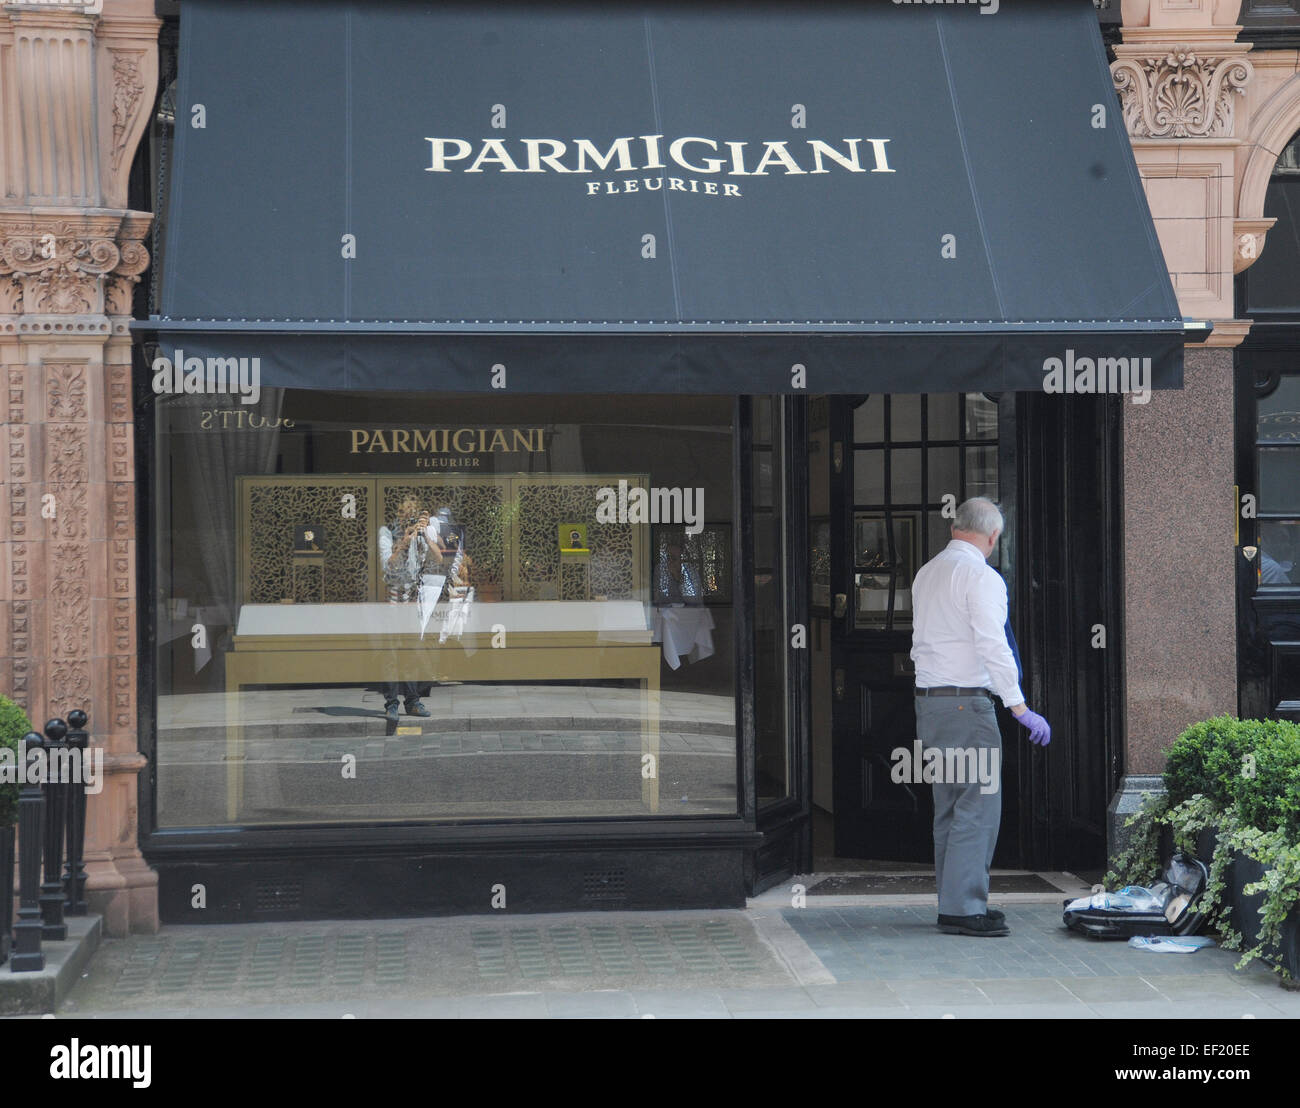 La polizia frequentare la scena di un fallito tentativo di rapina a orologiai di lusso Parmigiani sulla Mount Street a Mayfair offre: atmosfera dove: Londra, Regno Unito quando: 23 Lug 2014 Foto Stock